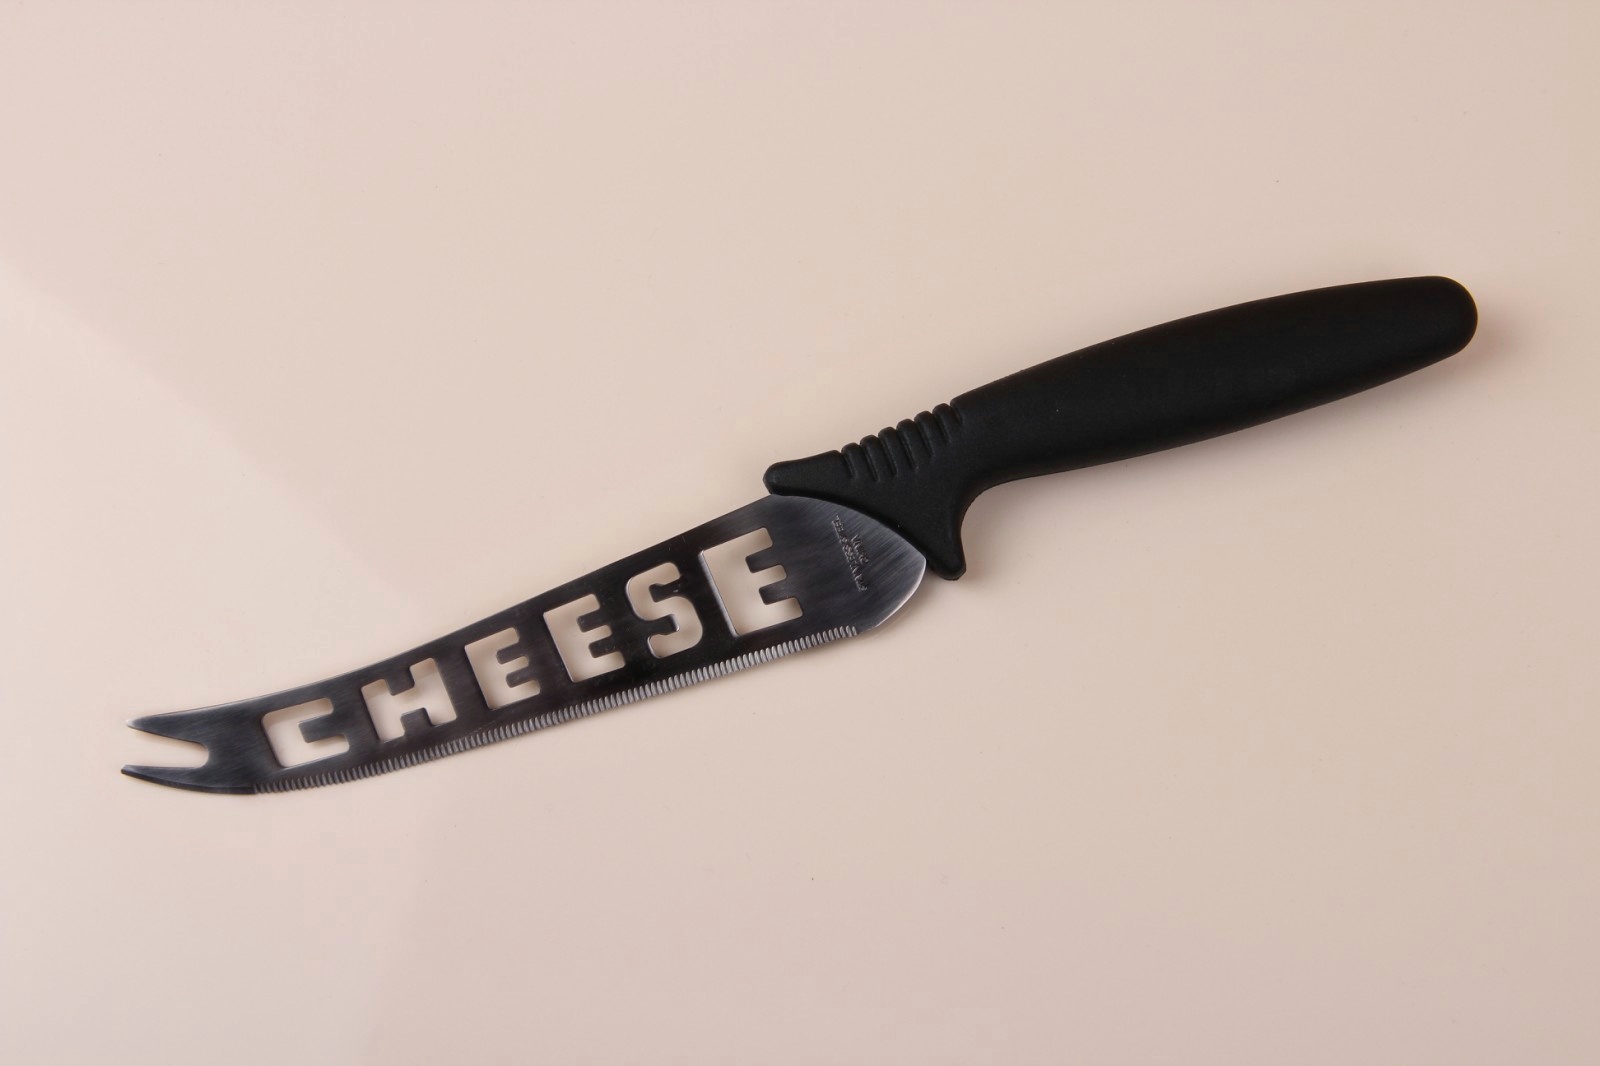 Нож для сыра с надписью "Chesse"